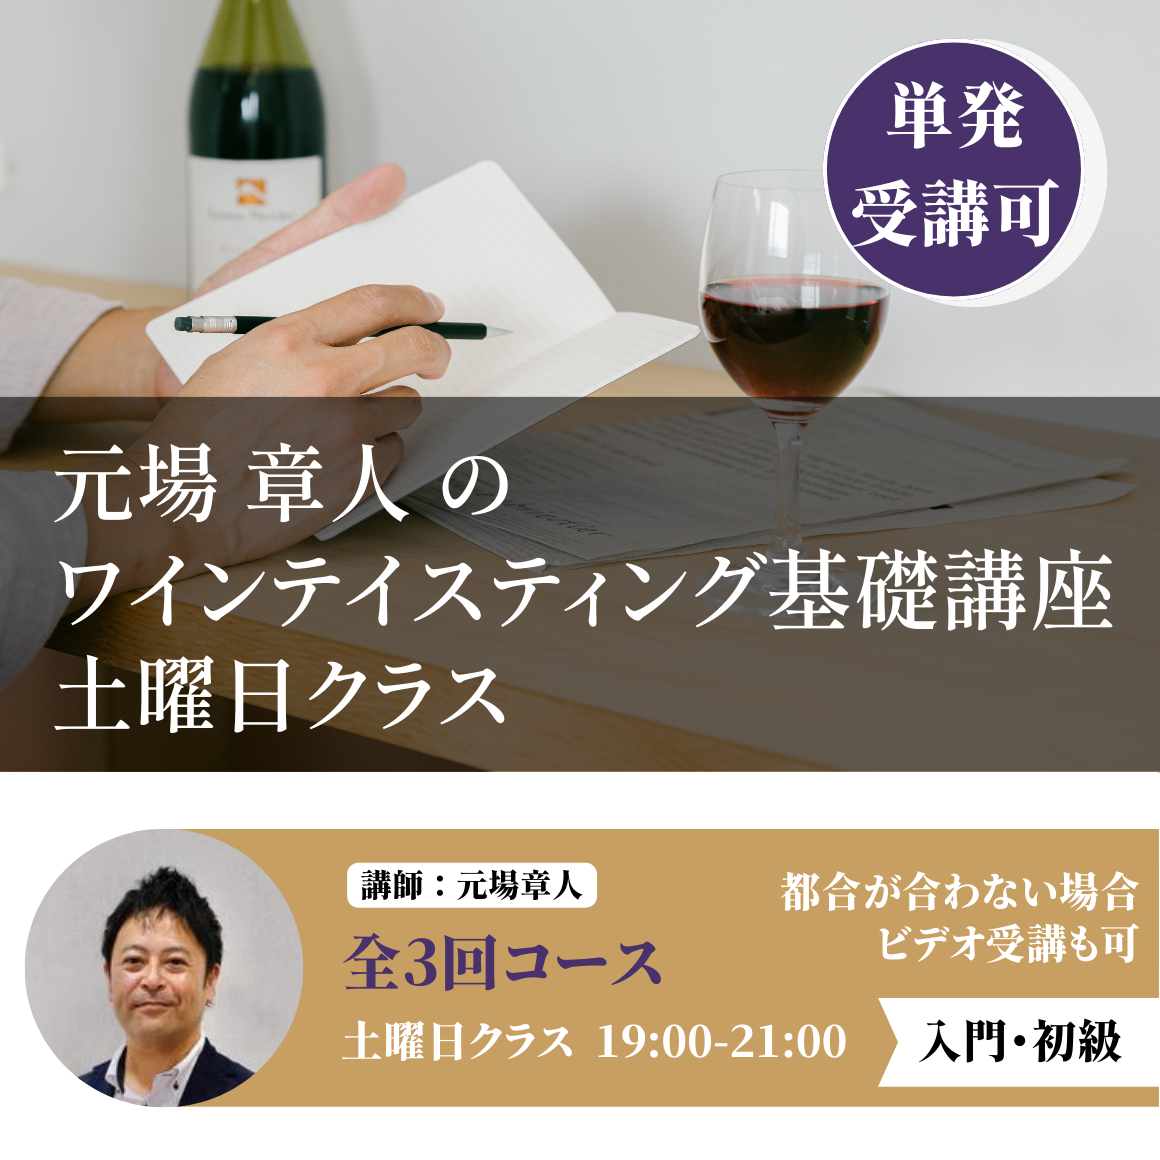 【土曜日】元場章人のワインテイスティング基礎講座